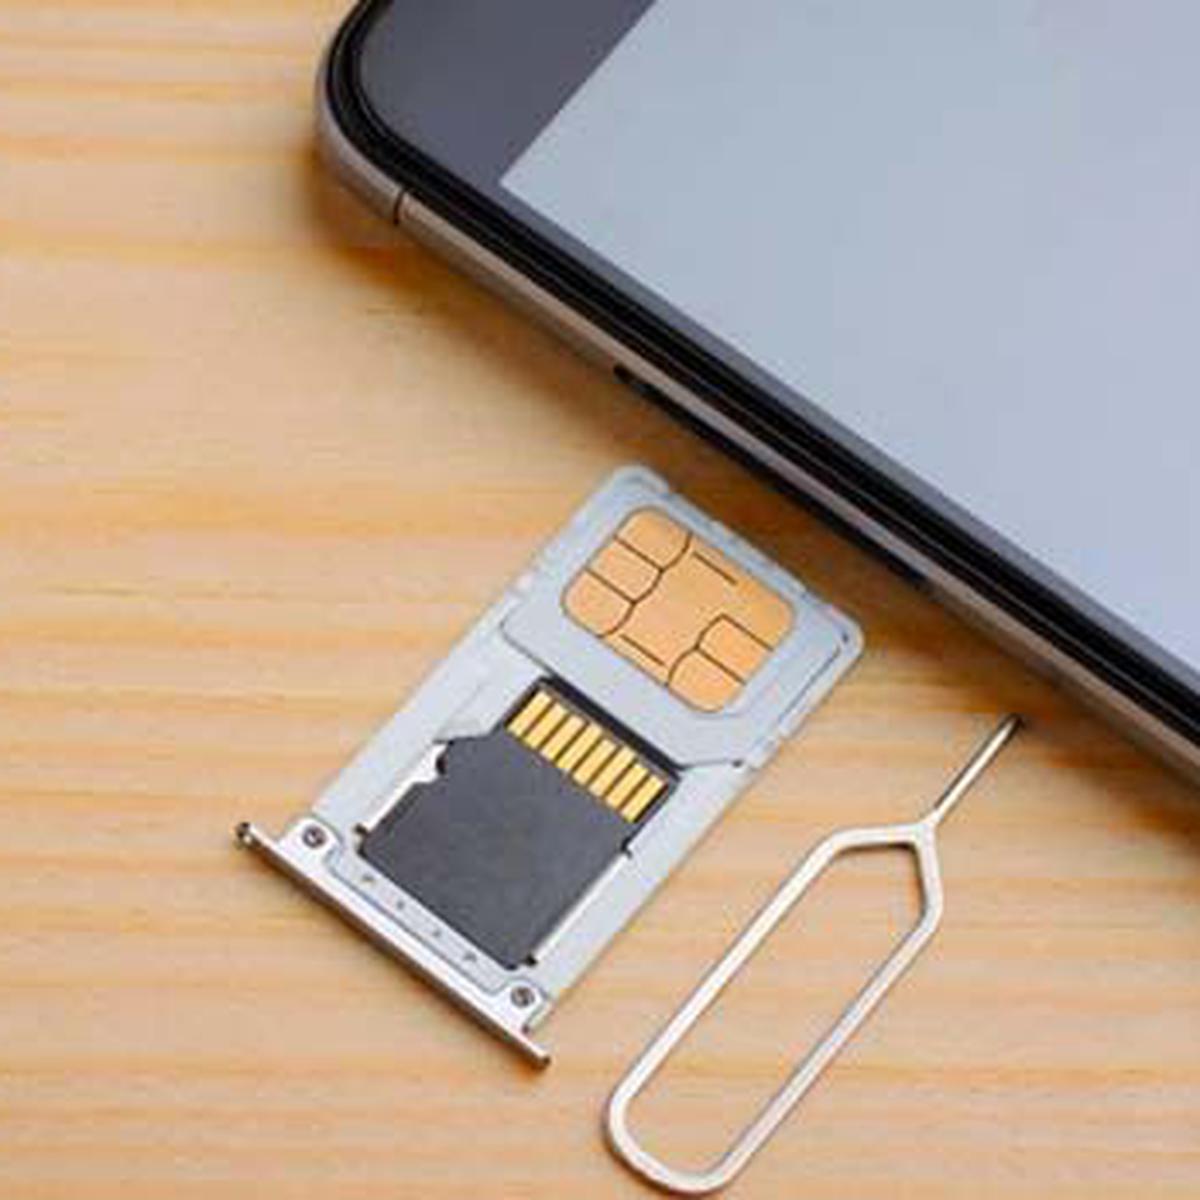 Qué información guarda tu tarjeta SIM?